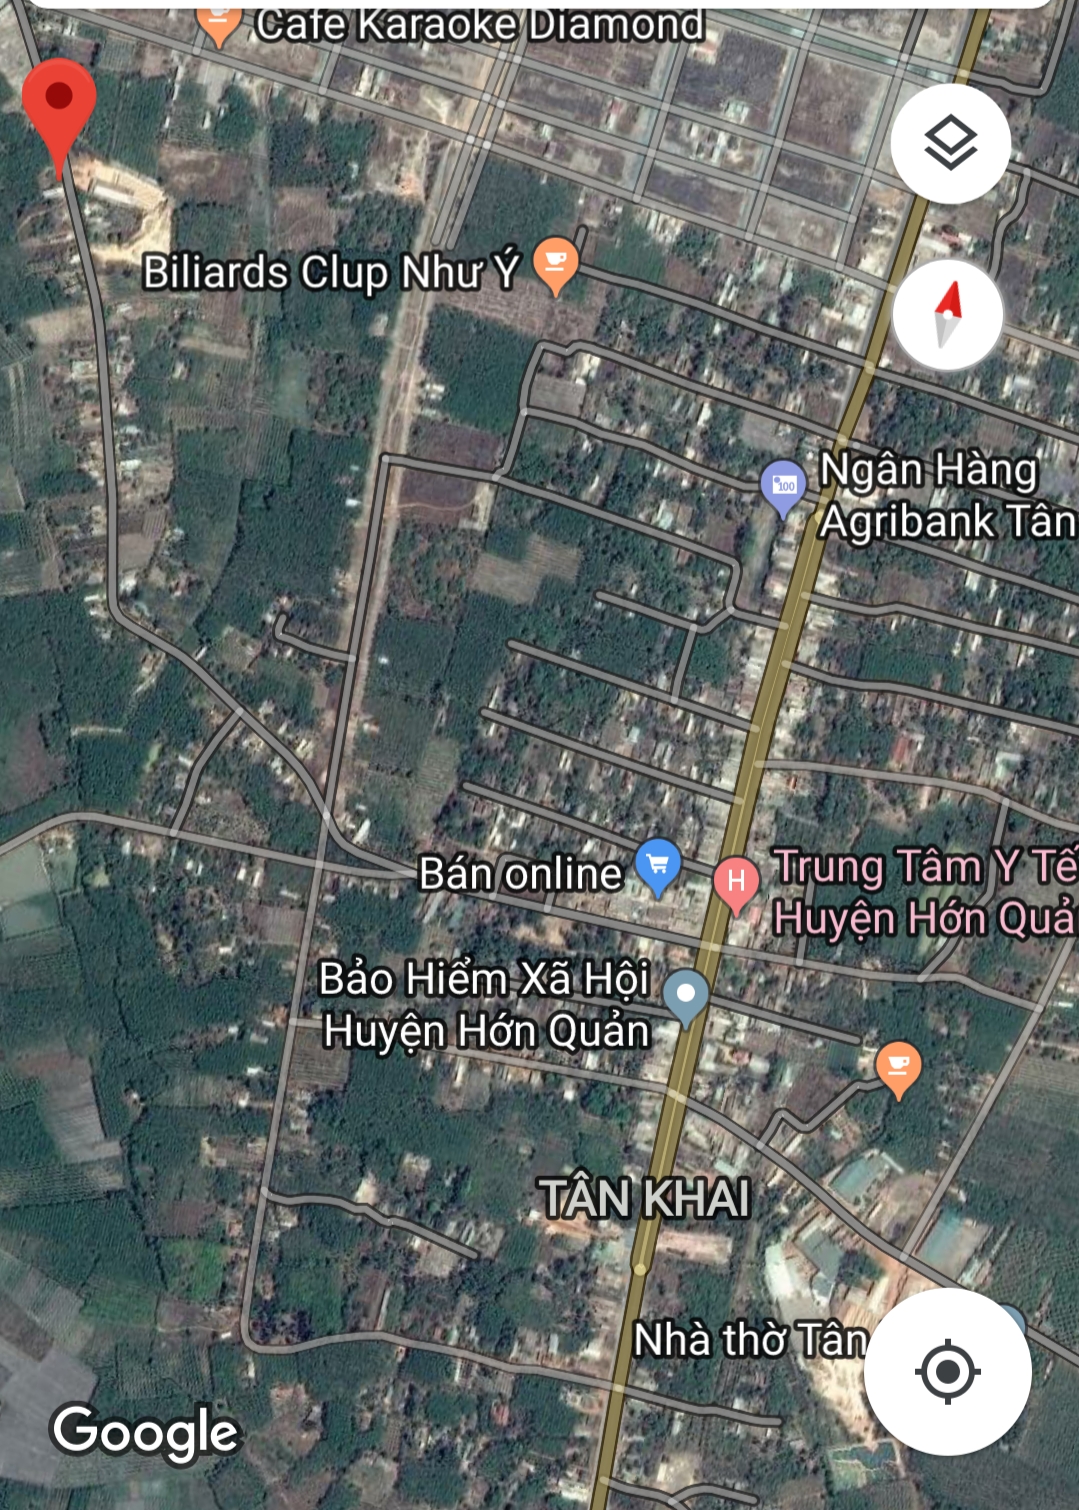 Đất thị trấn tân khai huyện Hớn quản tỉnh Bình Phước